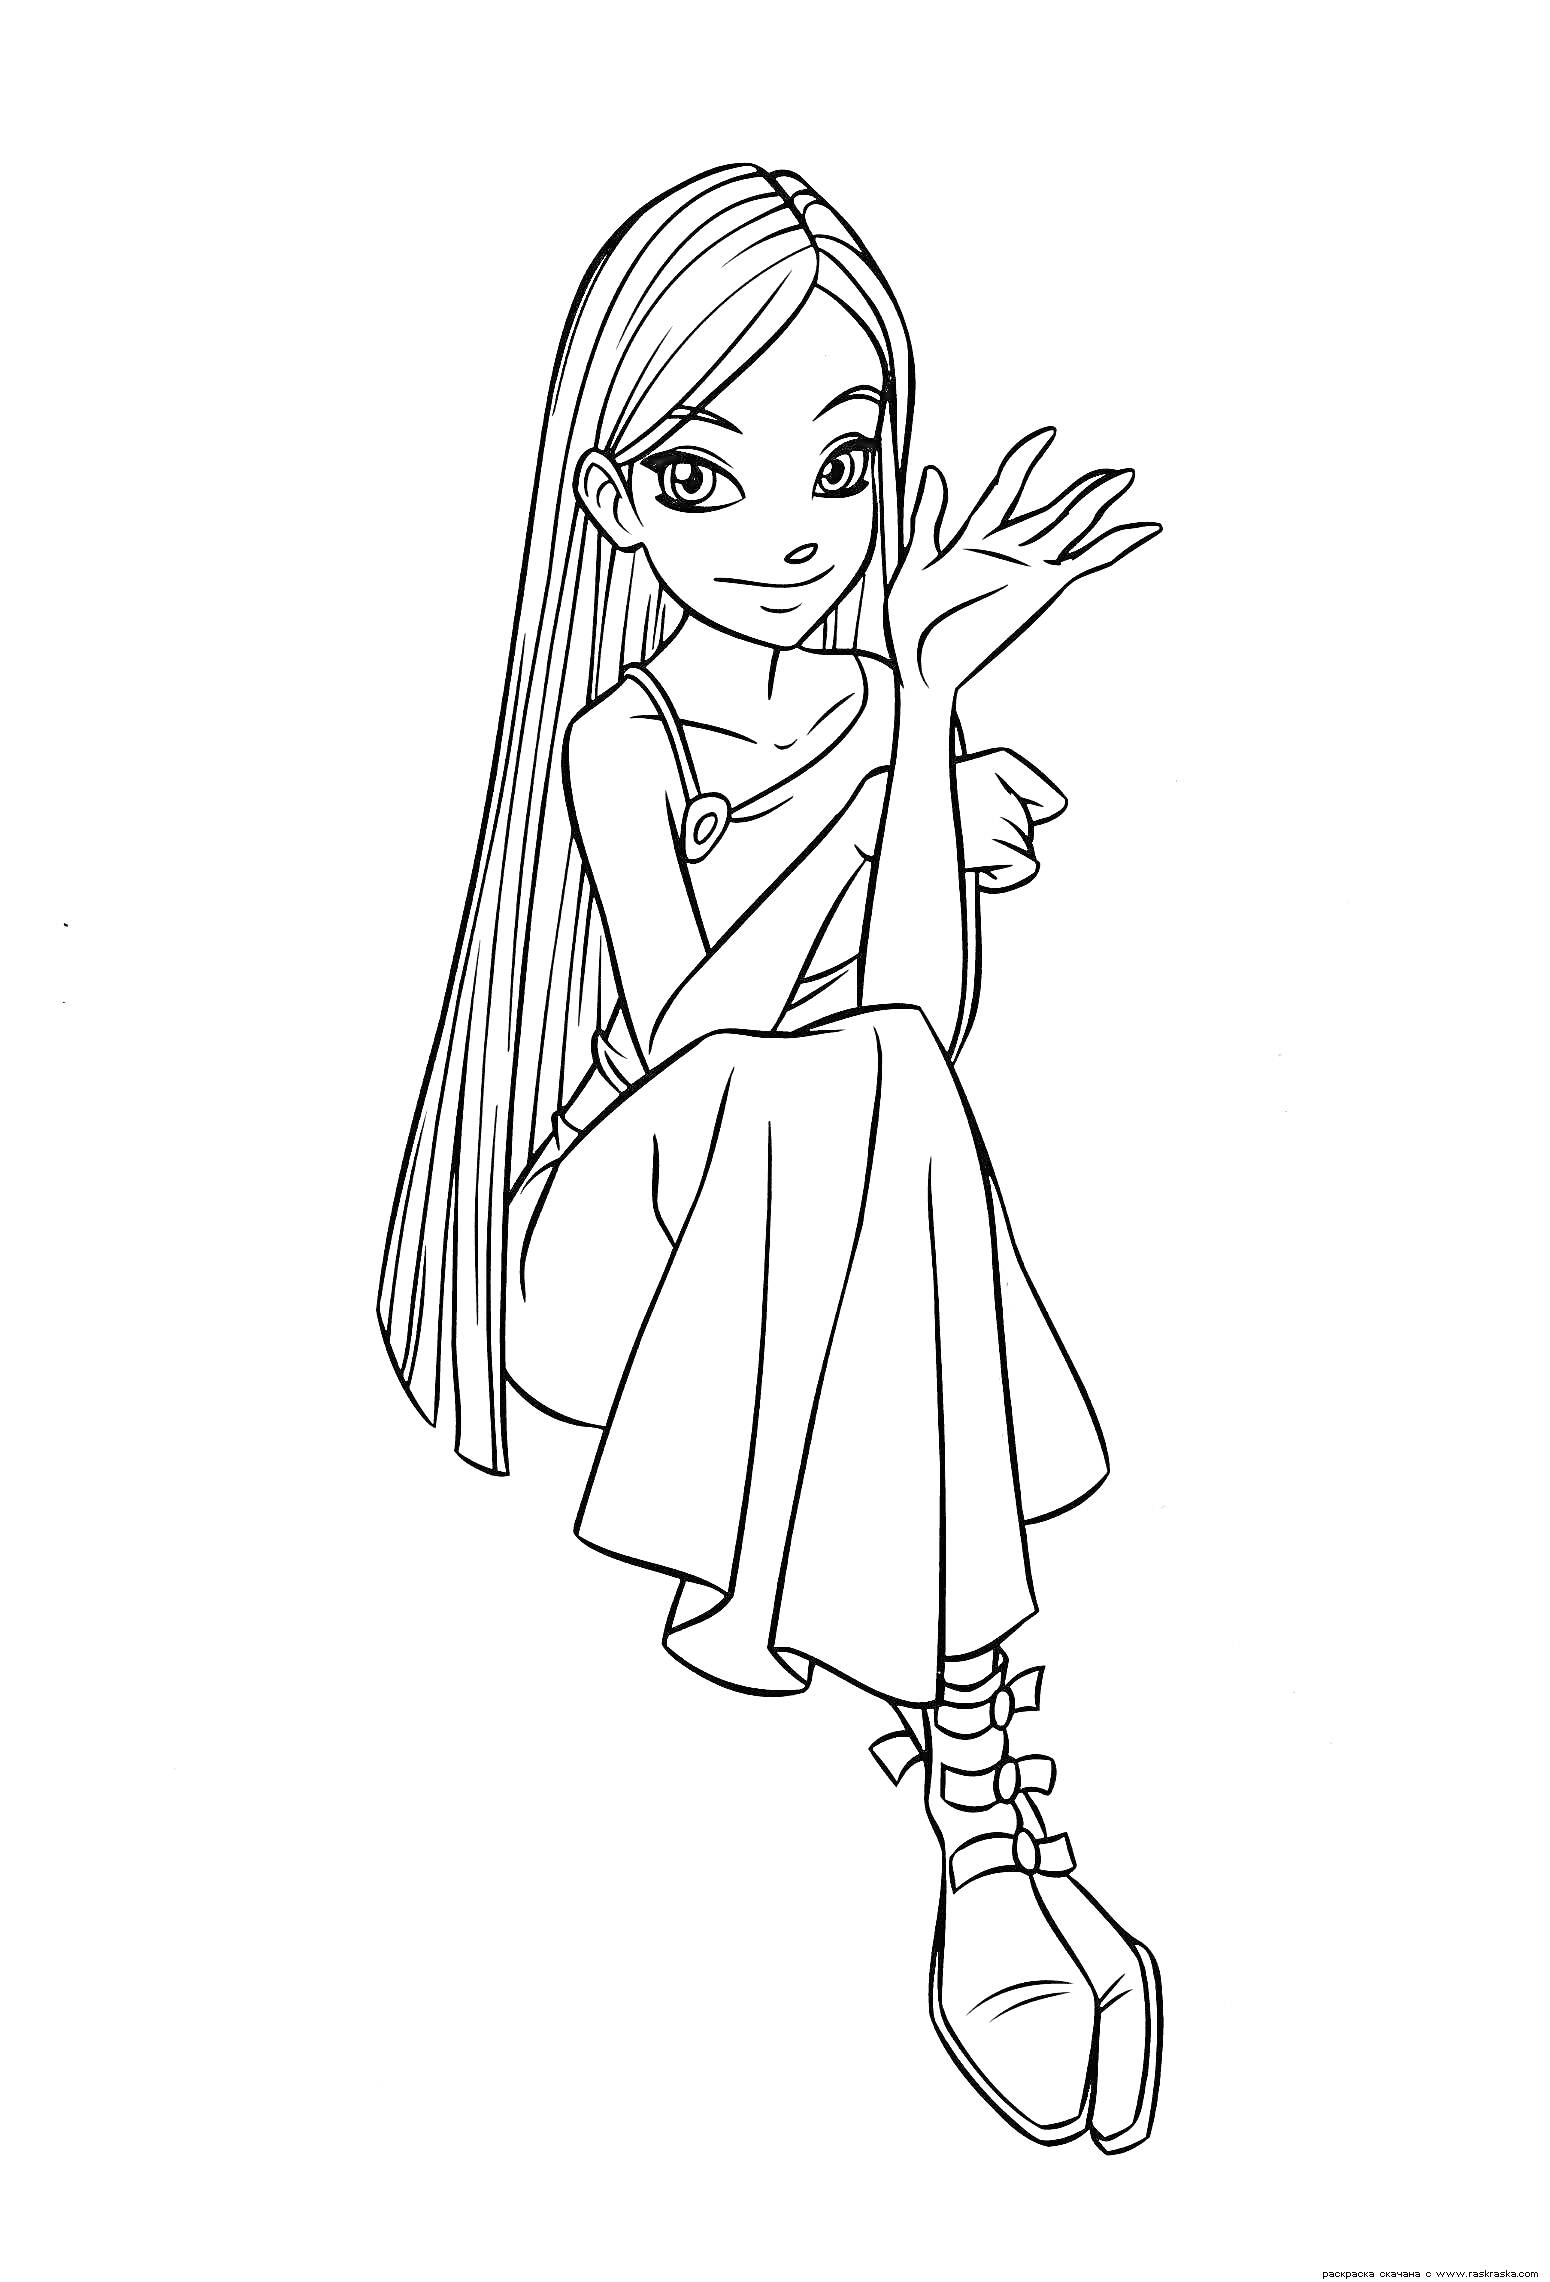 Девушка-чародейка с длинными волосами и в длинном платье, сидящая и показывающая жестикулирующую руку